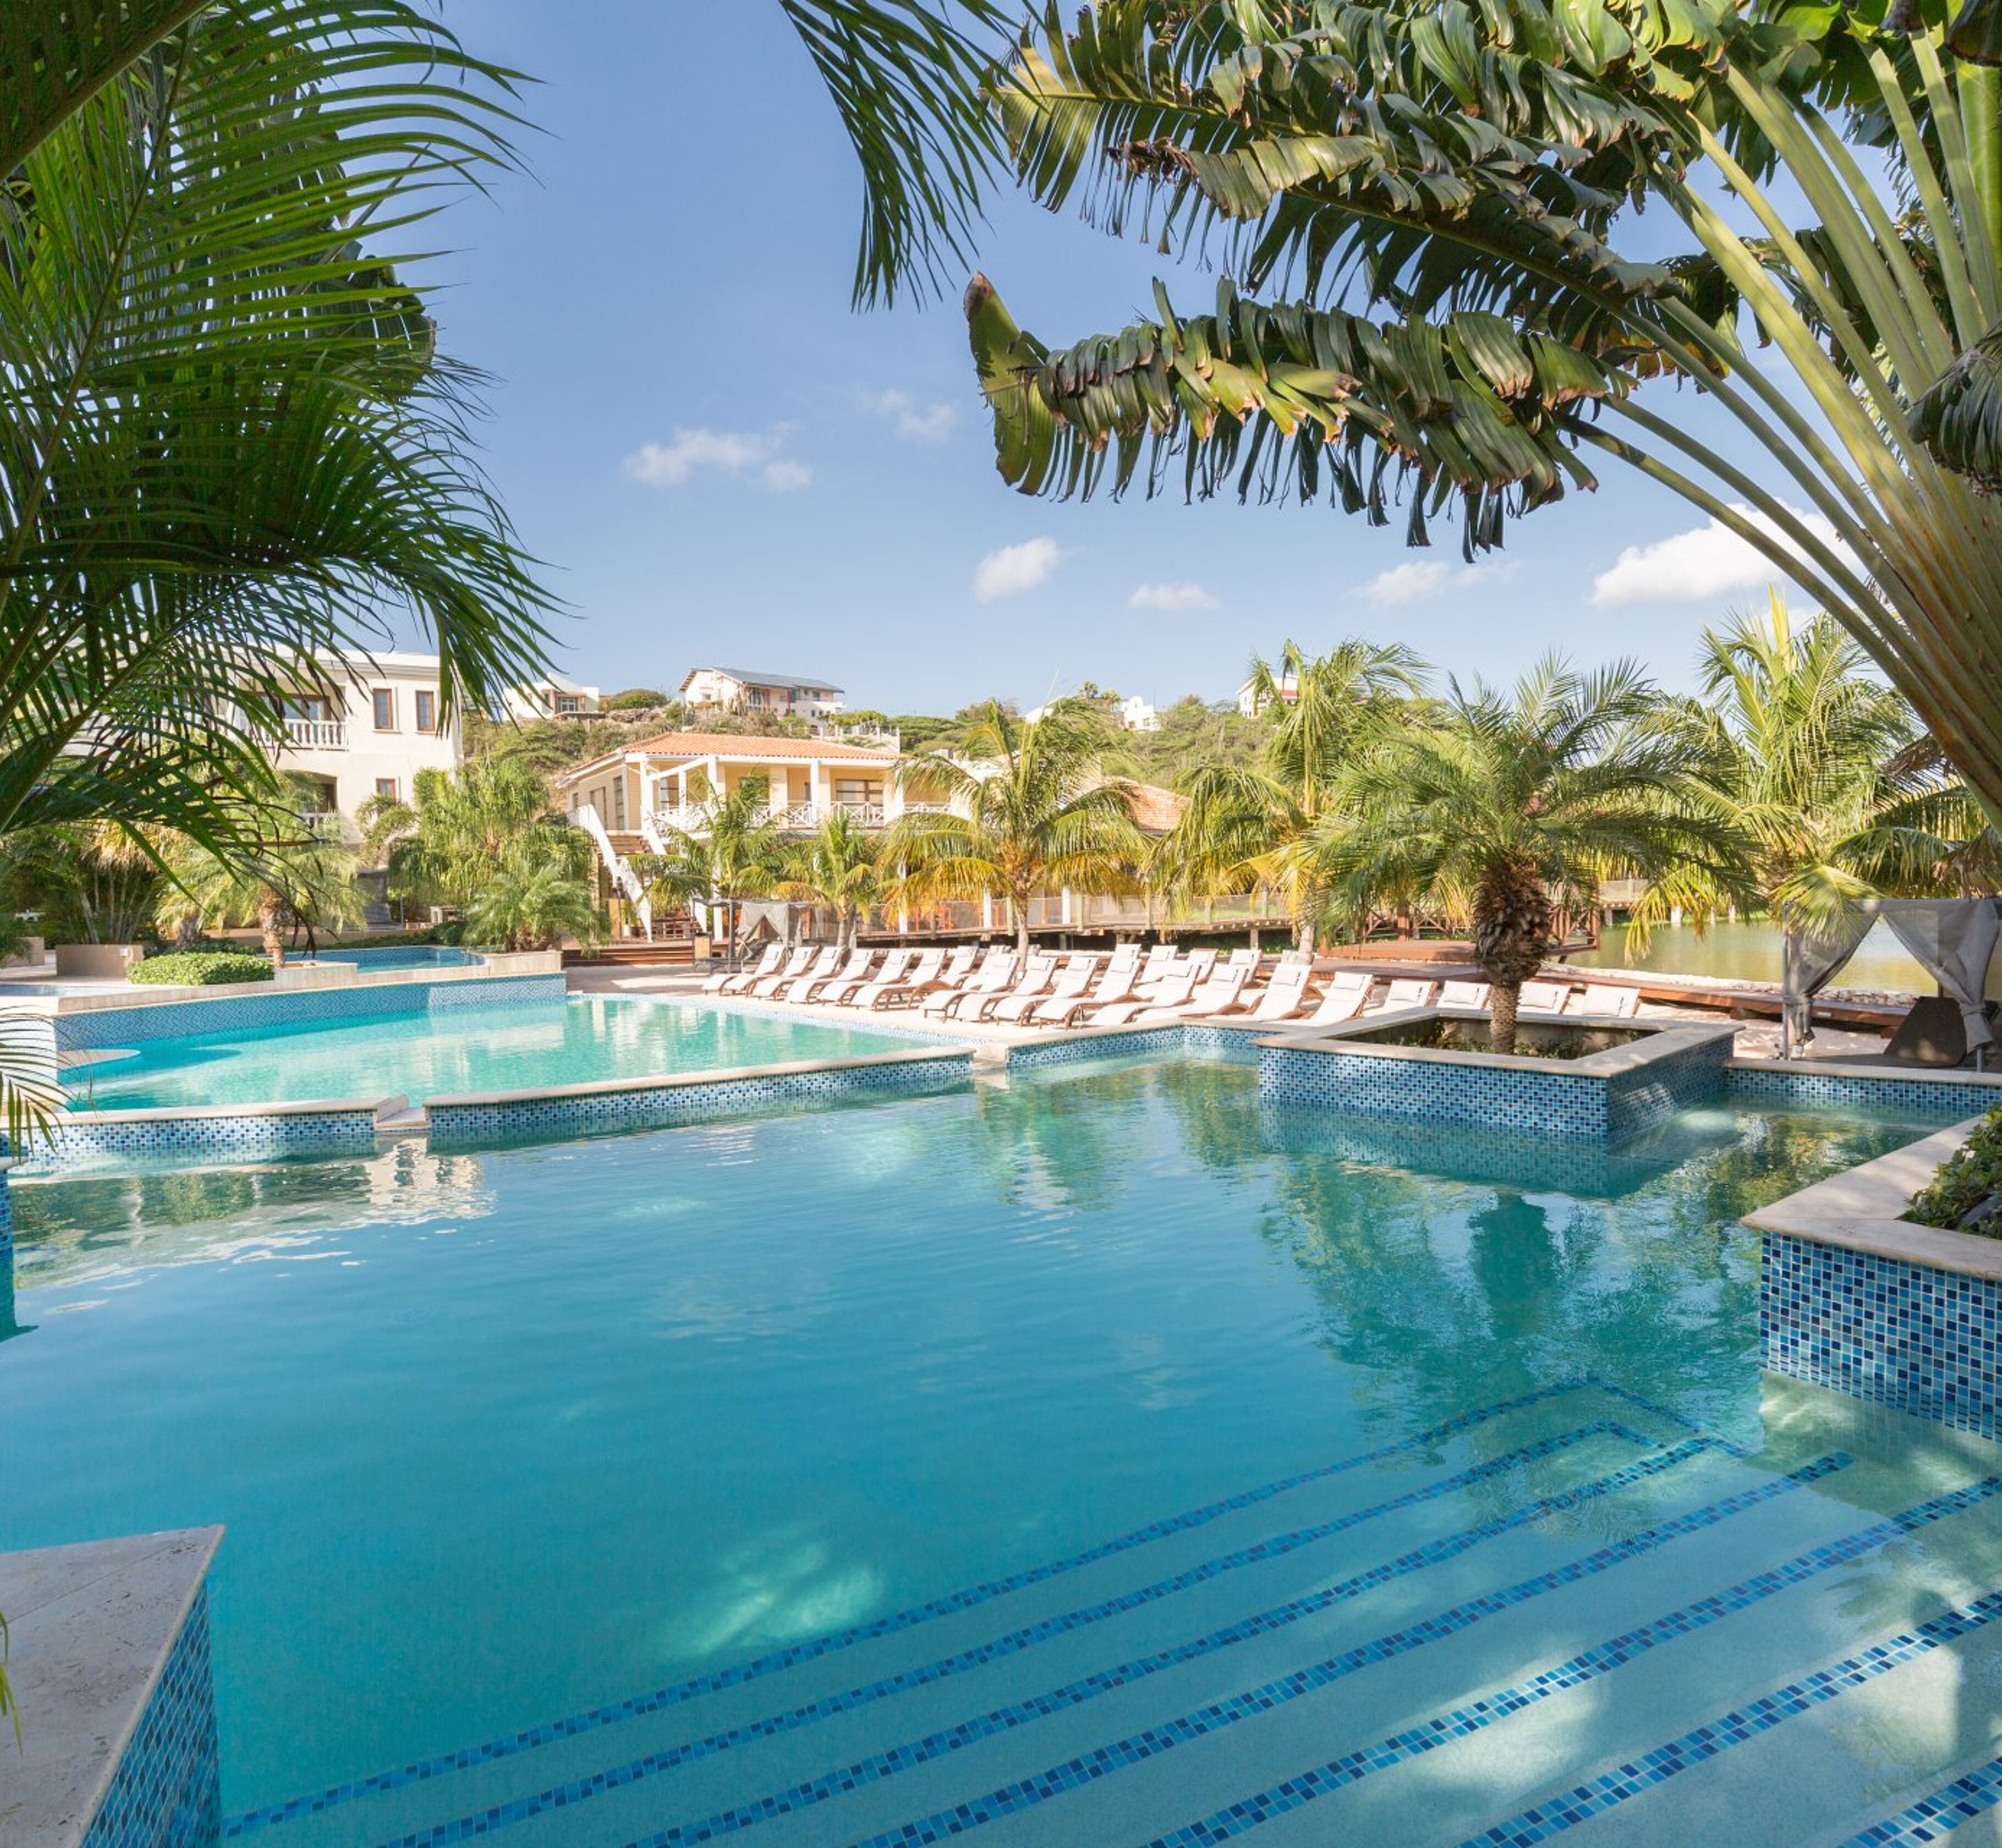 ACOYA Curacao Resort, Villas & Spa